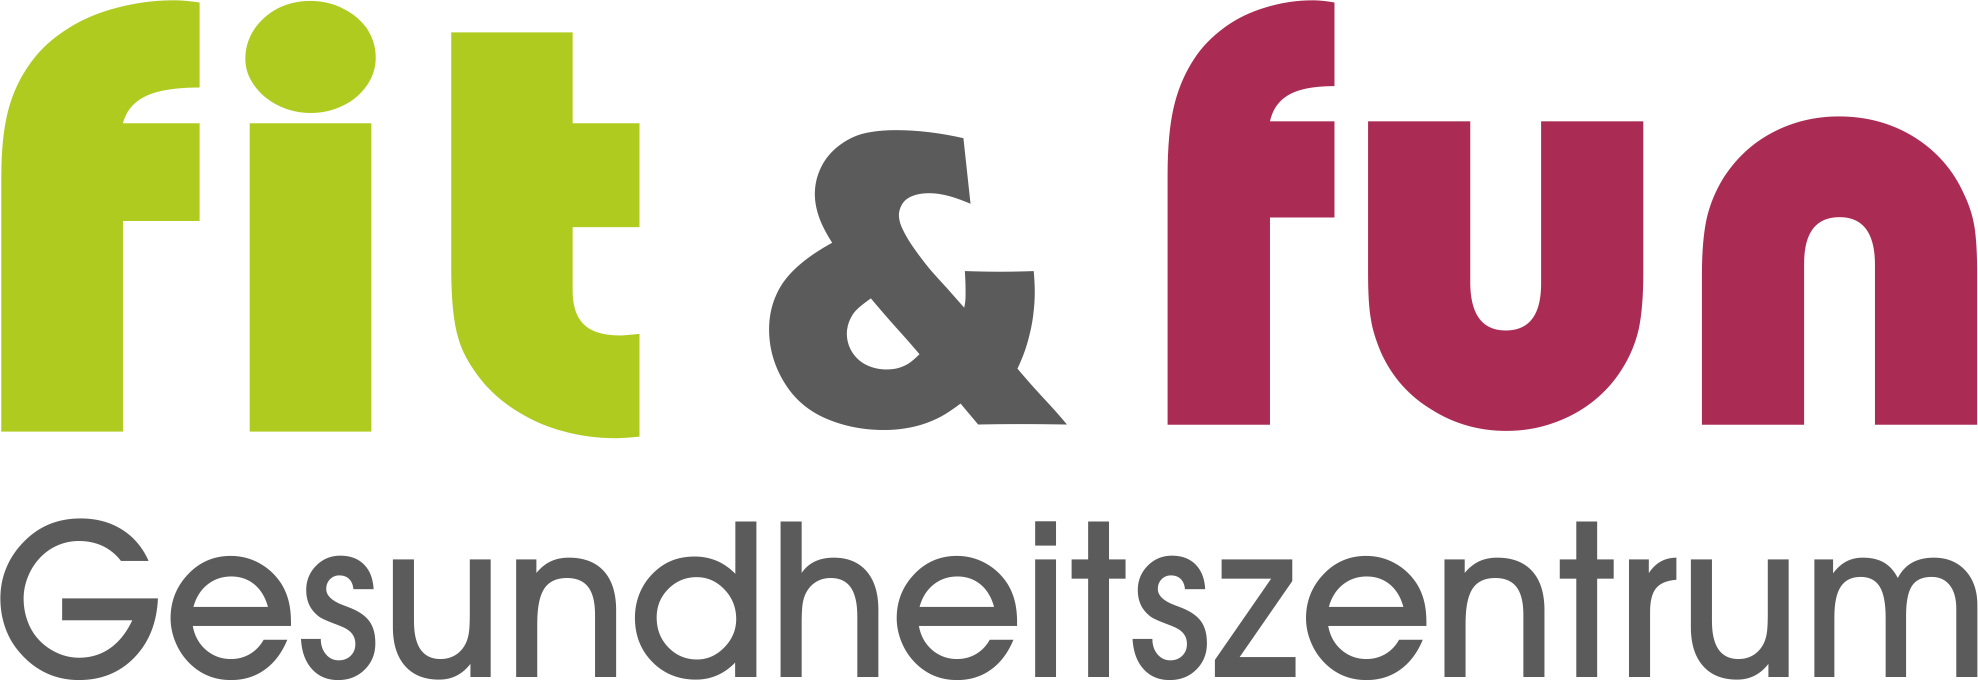 Logo der Firma Gesundheitszentrum Fit & Fun Bechhofen aus Bechhofen